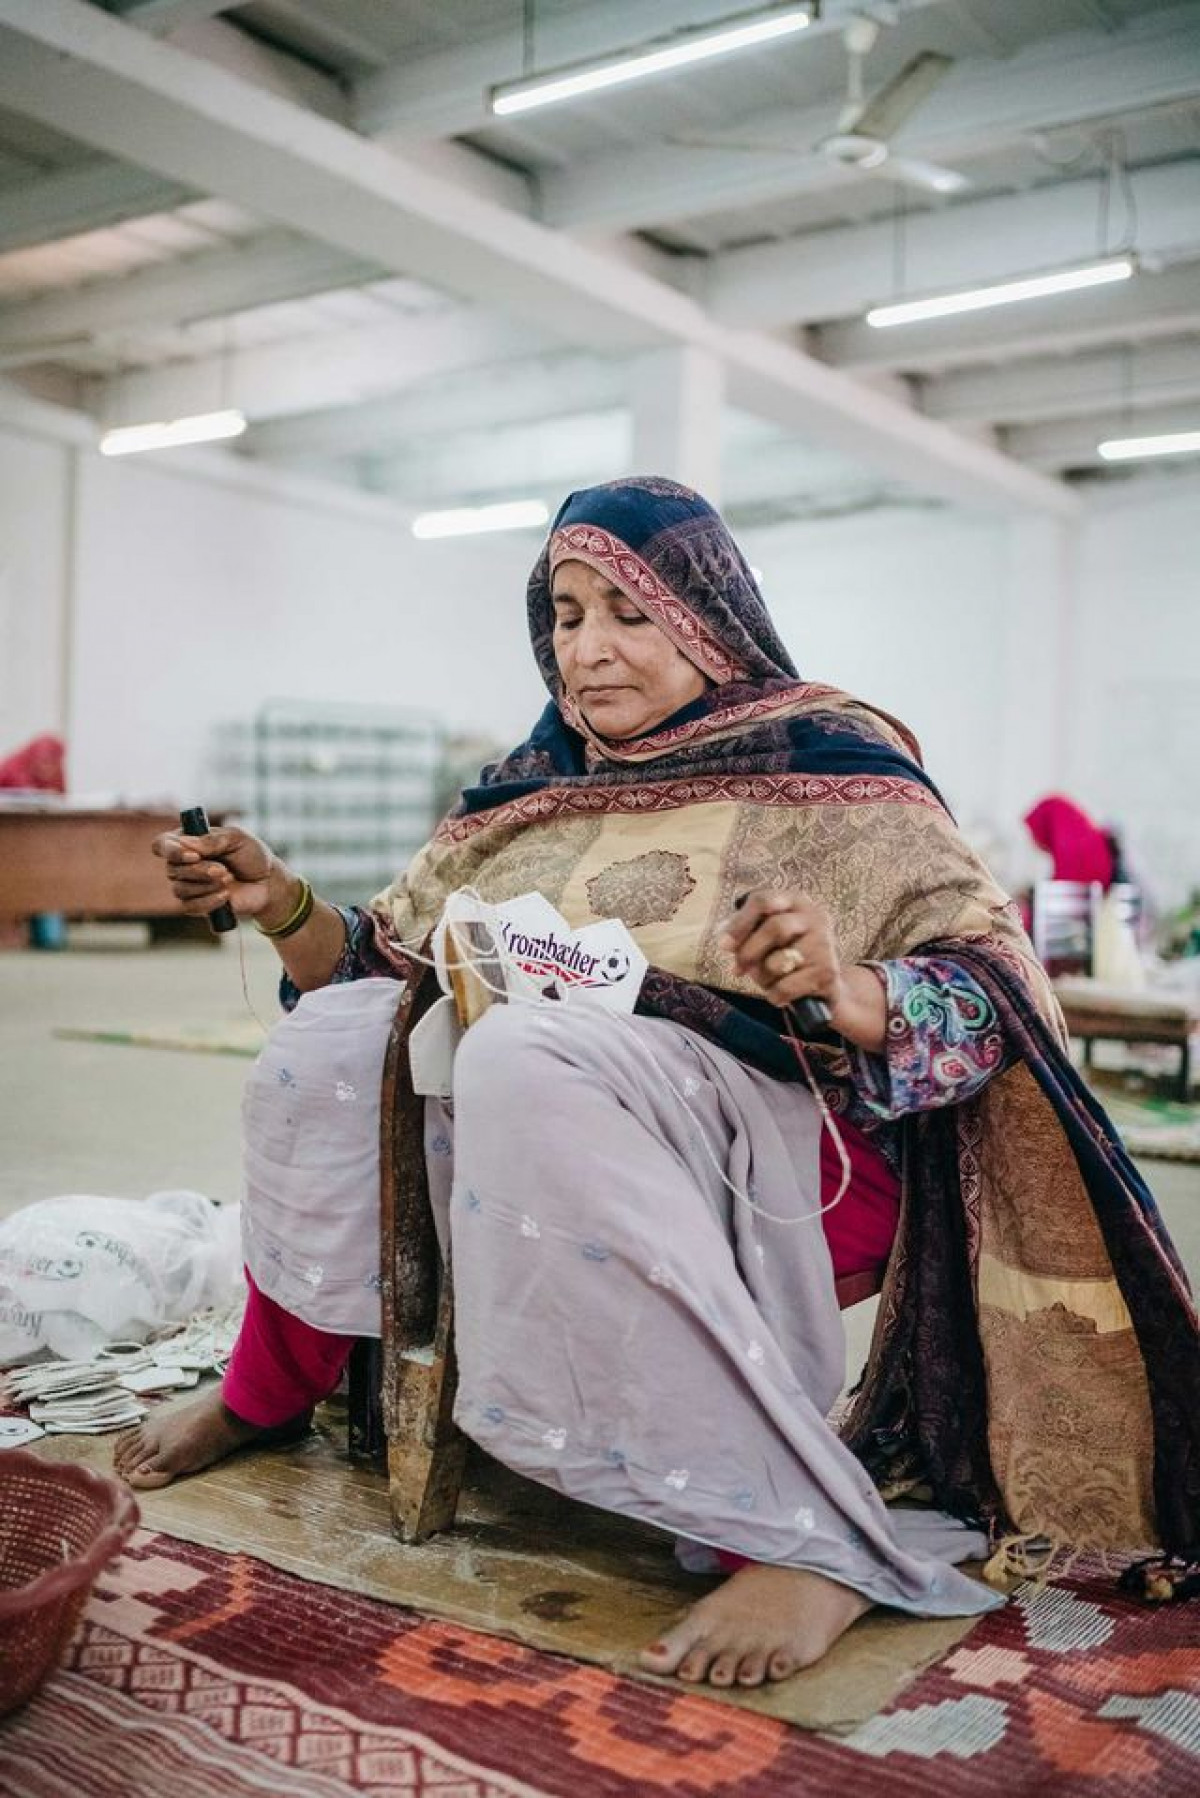 سيدة تخيط أطراف قطع لإنتاج كرة قدم داخل مصنع في بلدة سيالكوت الباكستانية التي تعتبر بمثابة عاصمة صناعة كرات القدم في العالم